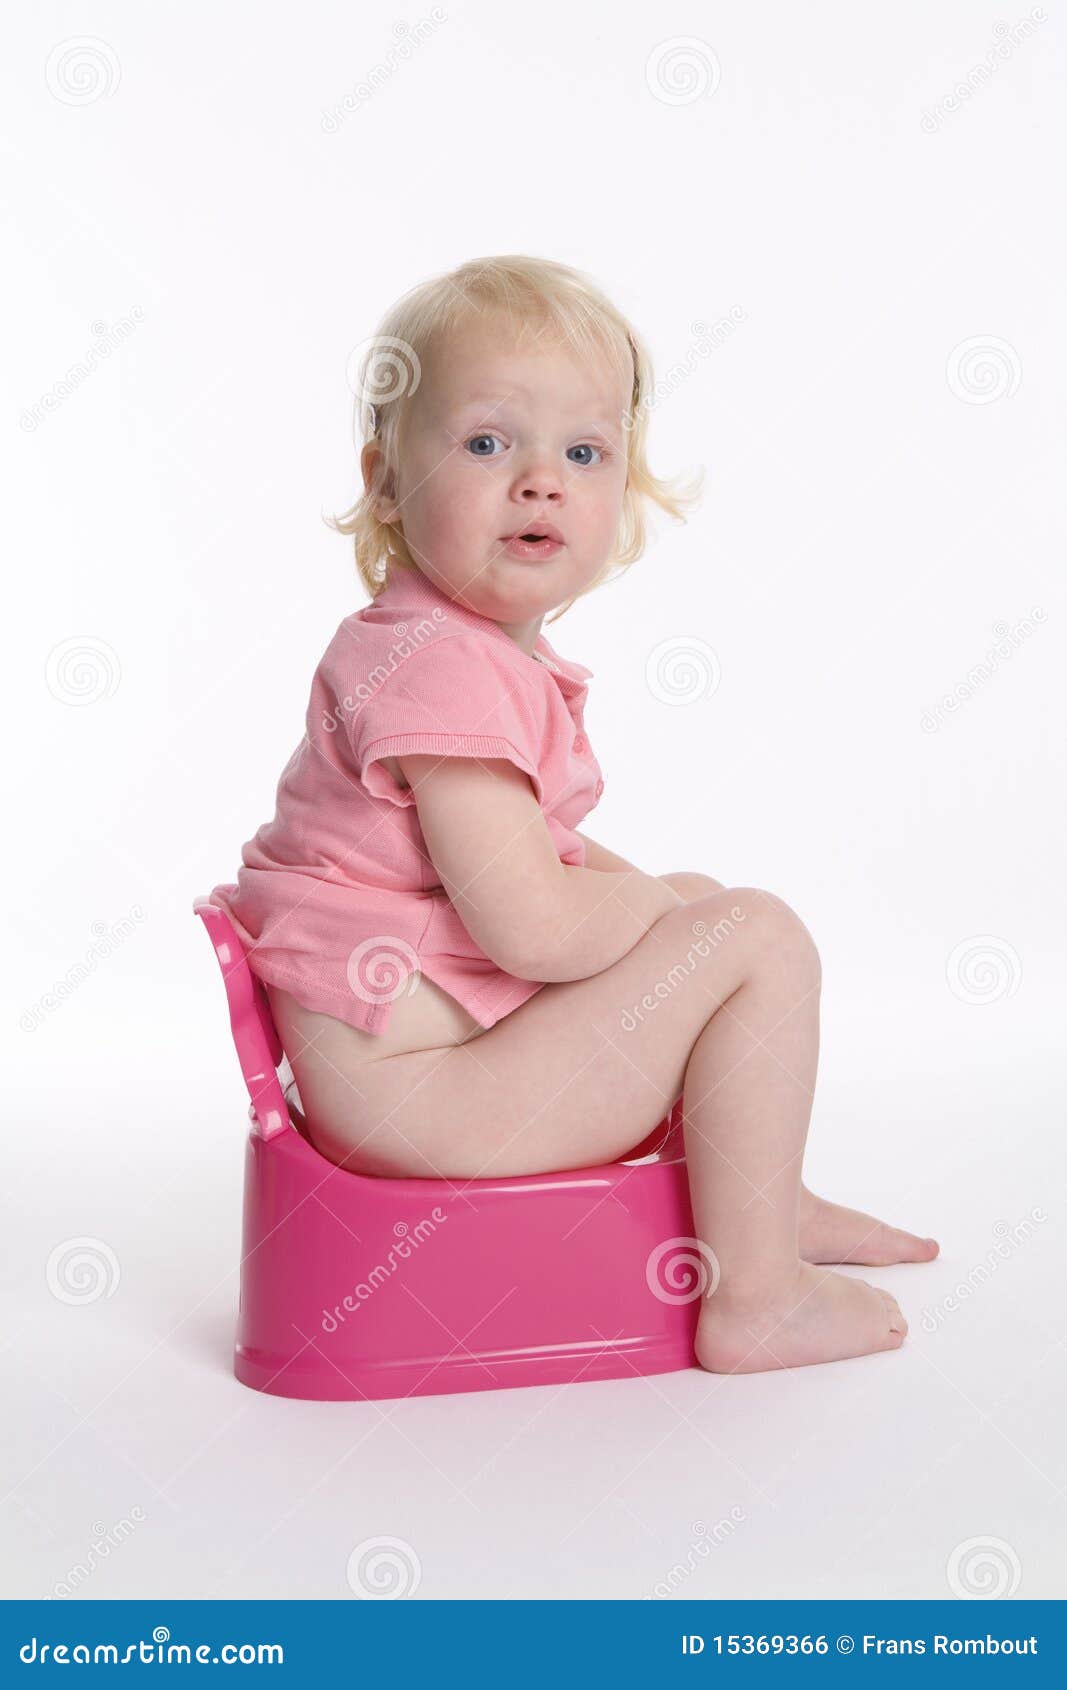 https://thumbs.dreamstime.com/z/toddler-girl-potty-15369366.jpg